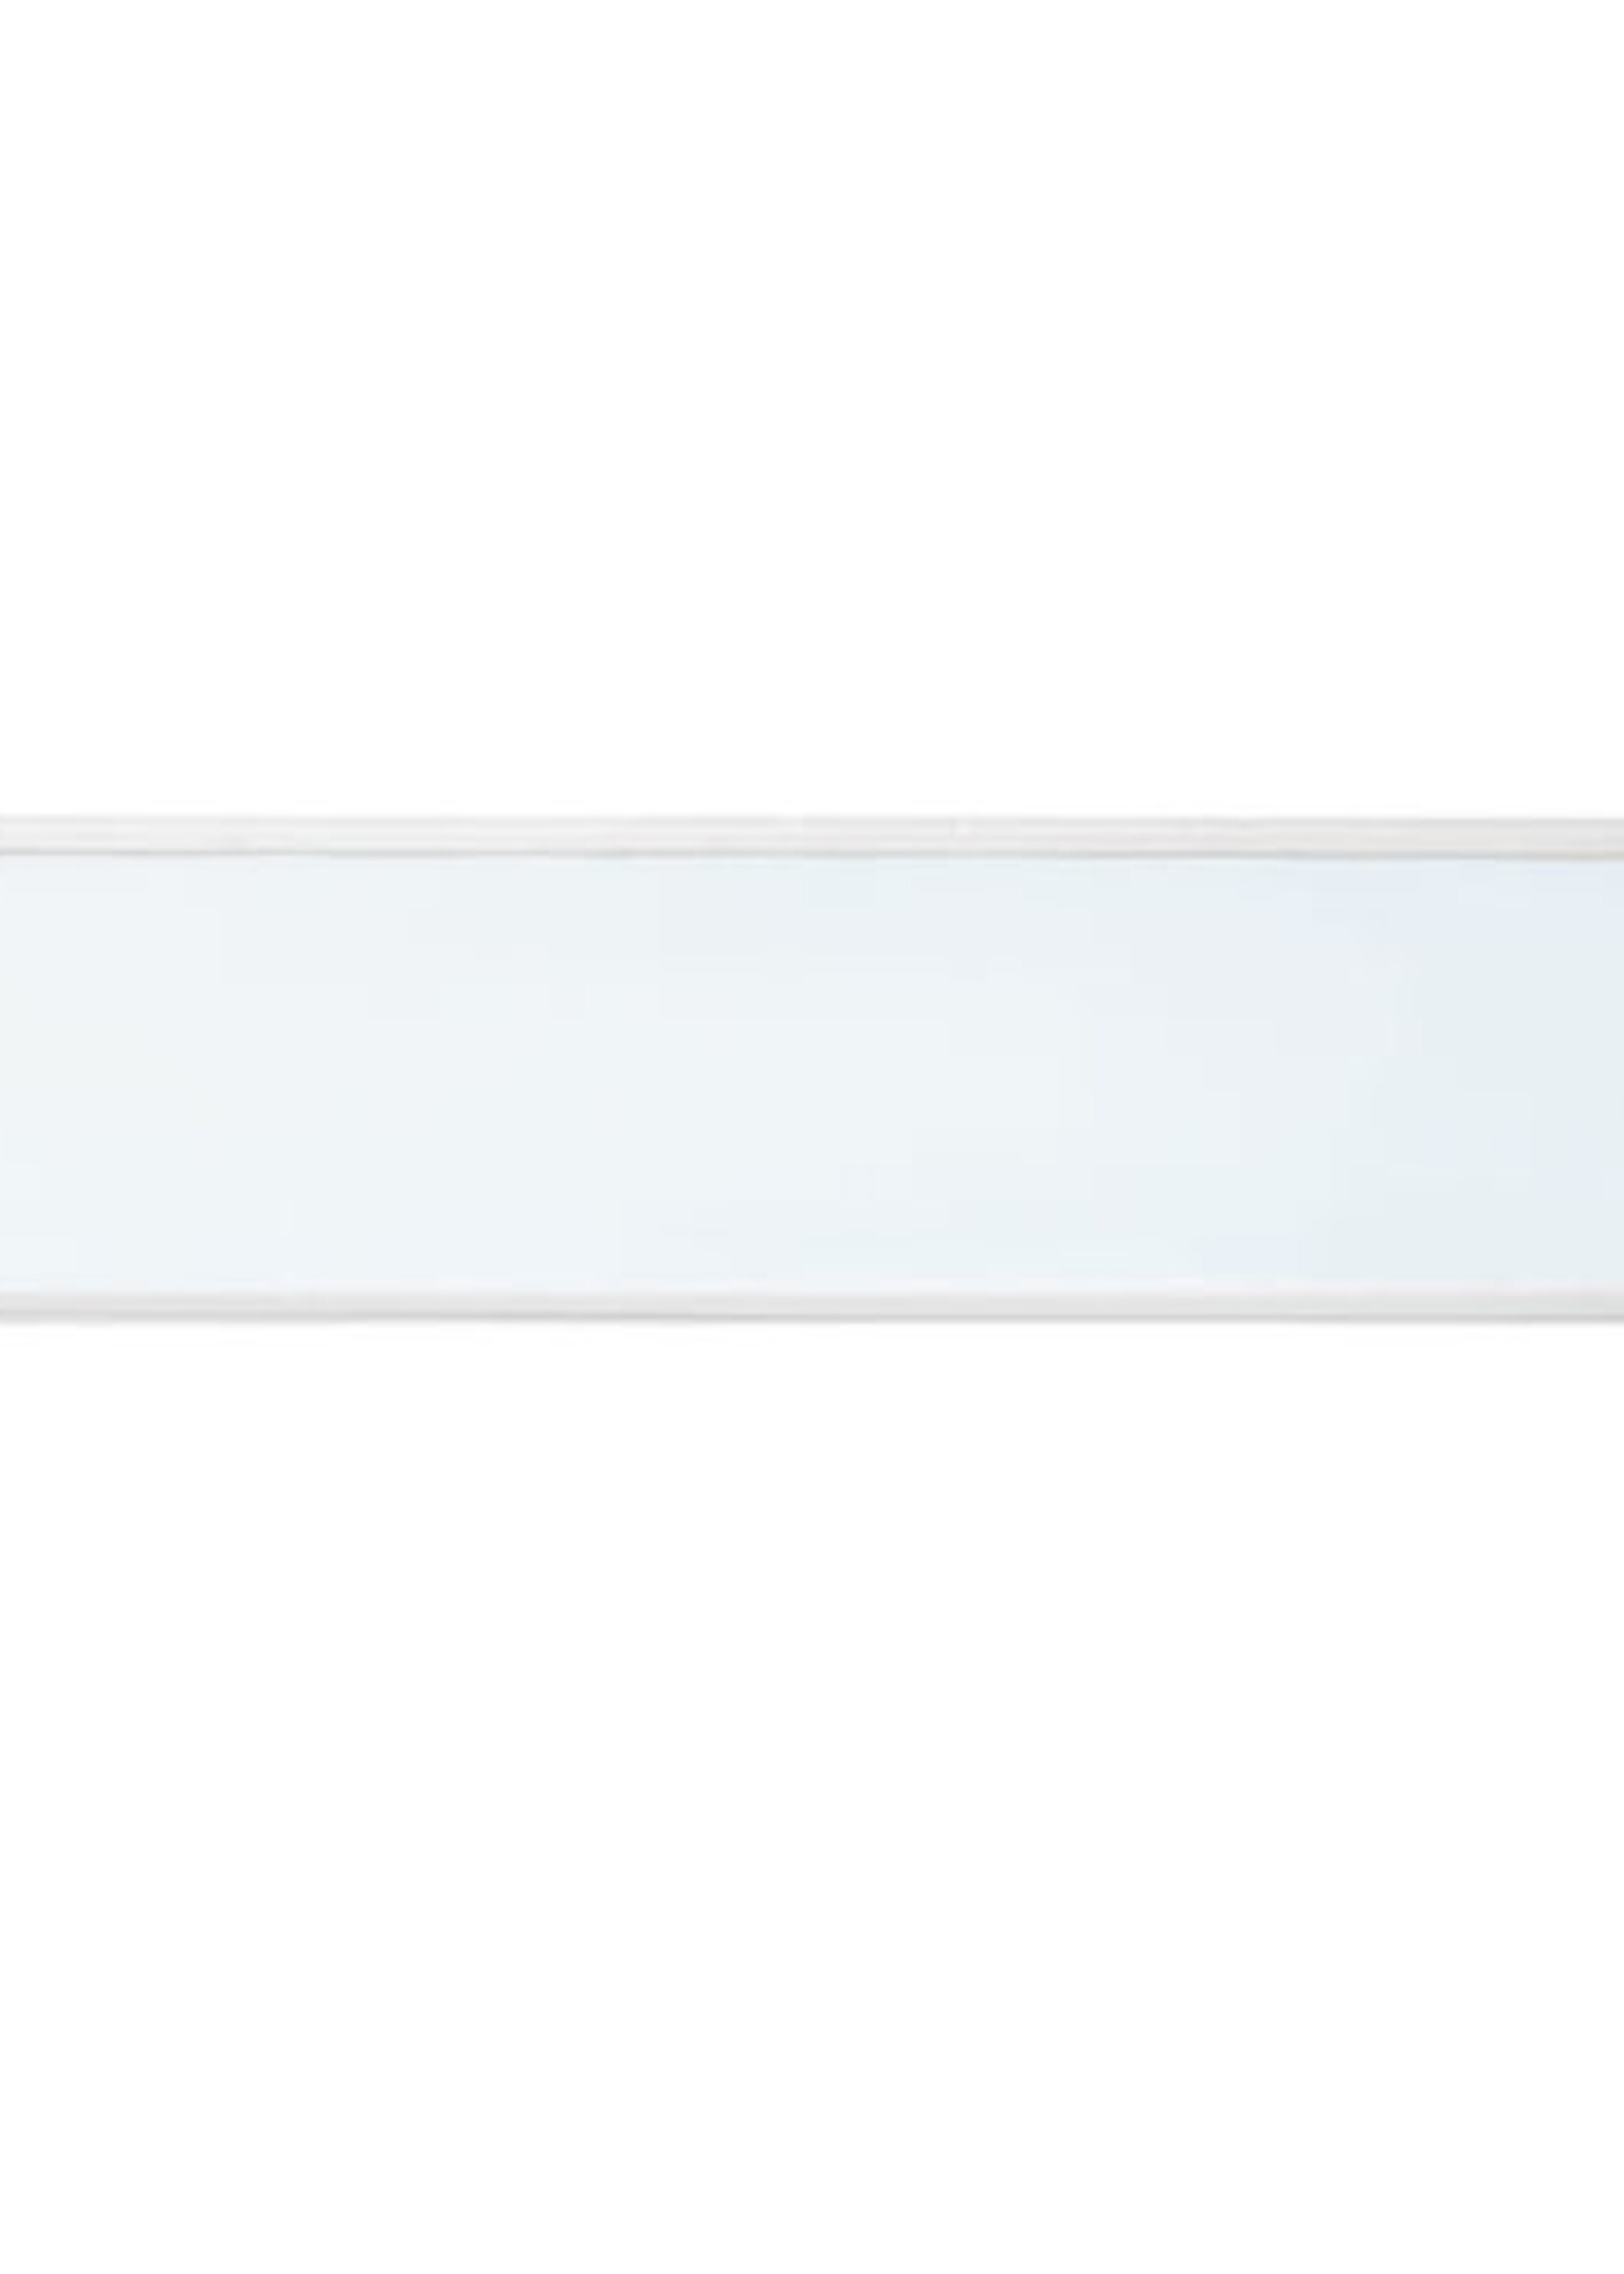 LEDWINKEL-Online LED Panel 30x150cm 40W 120lm/W Edge-lit